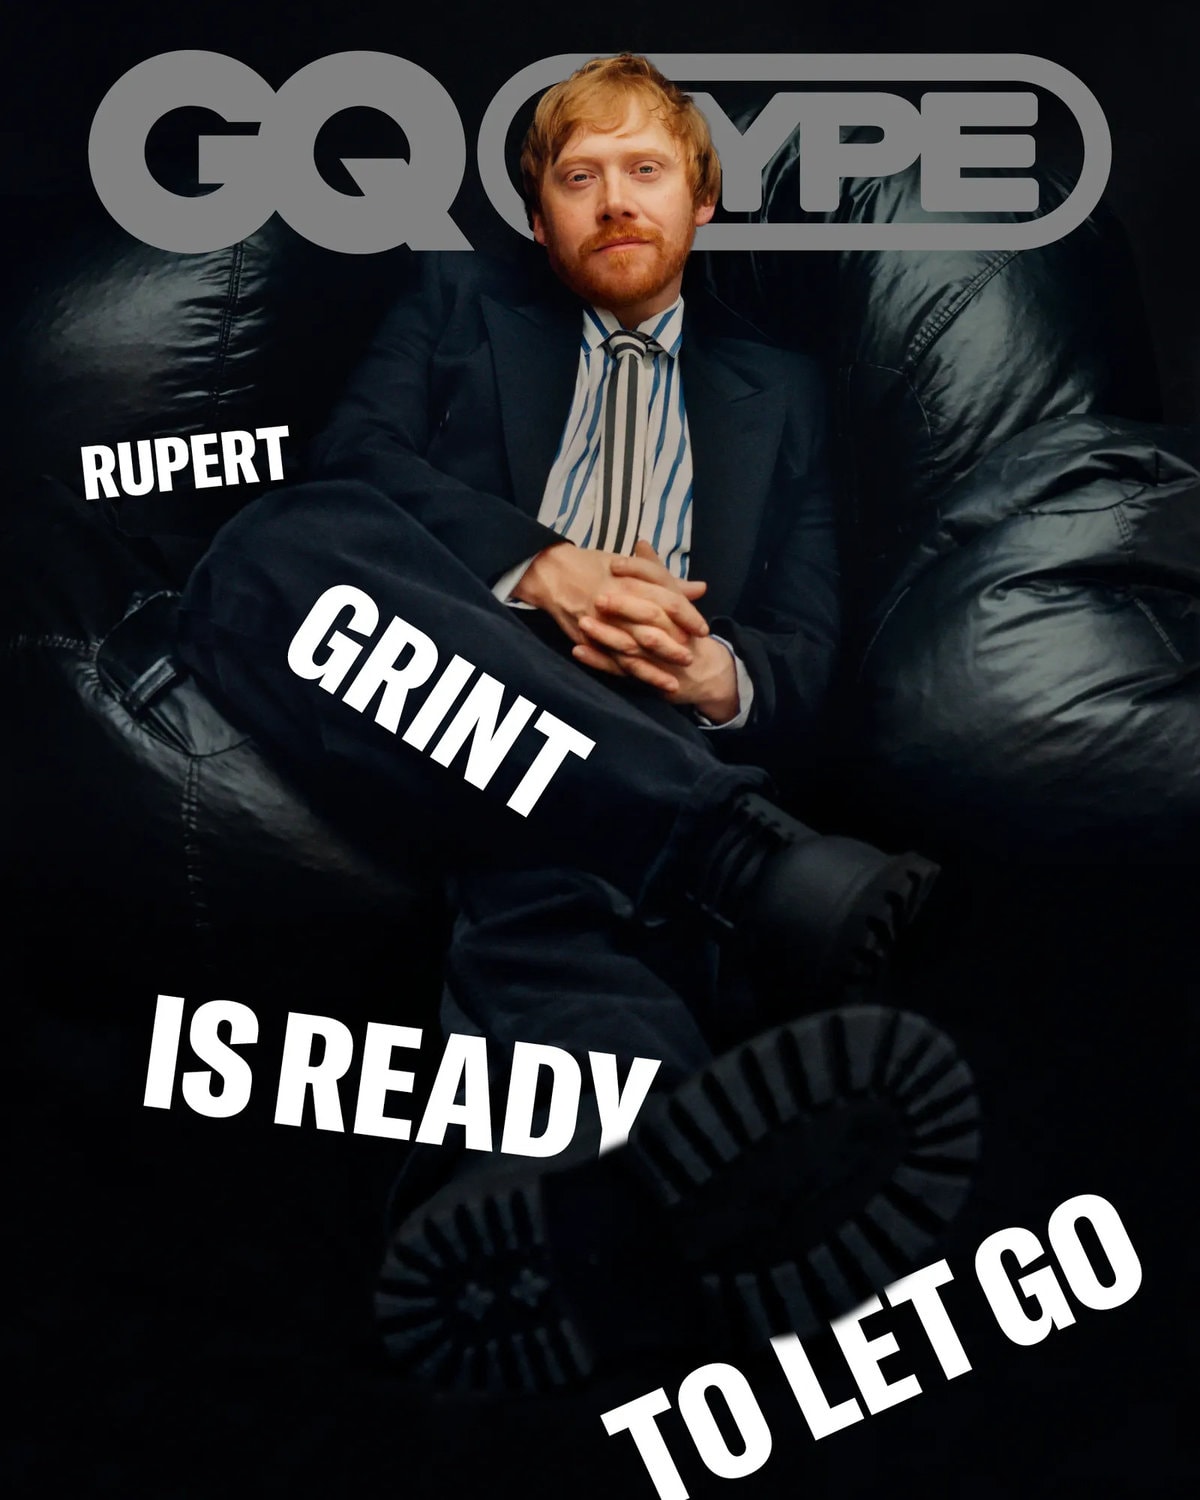 Руперт Гринт отрастил рыжую бороду и снялся в стильной фотосессии для GQ, рассказав, что спасло его карьеру 28